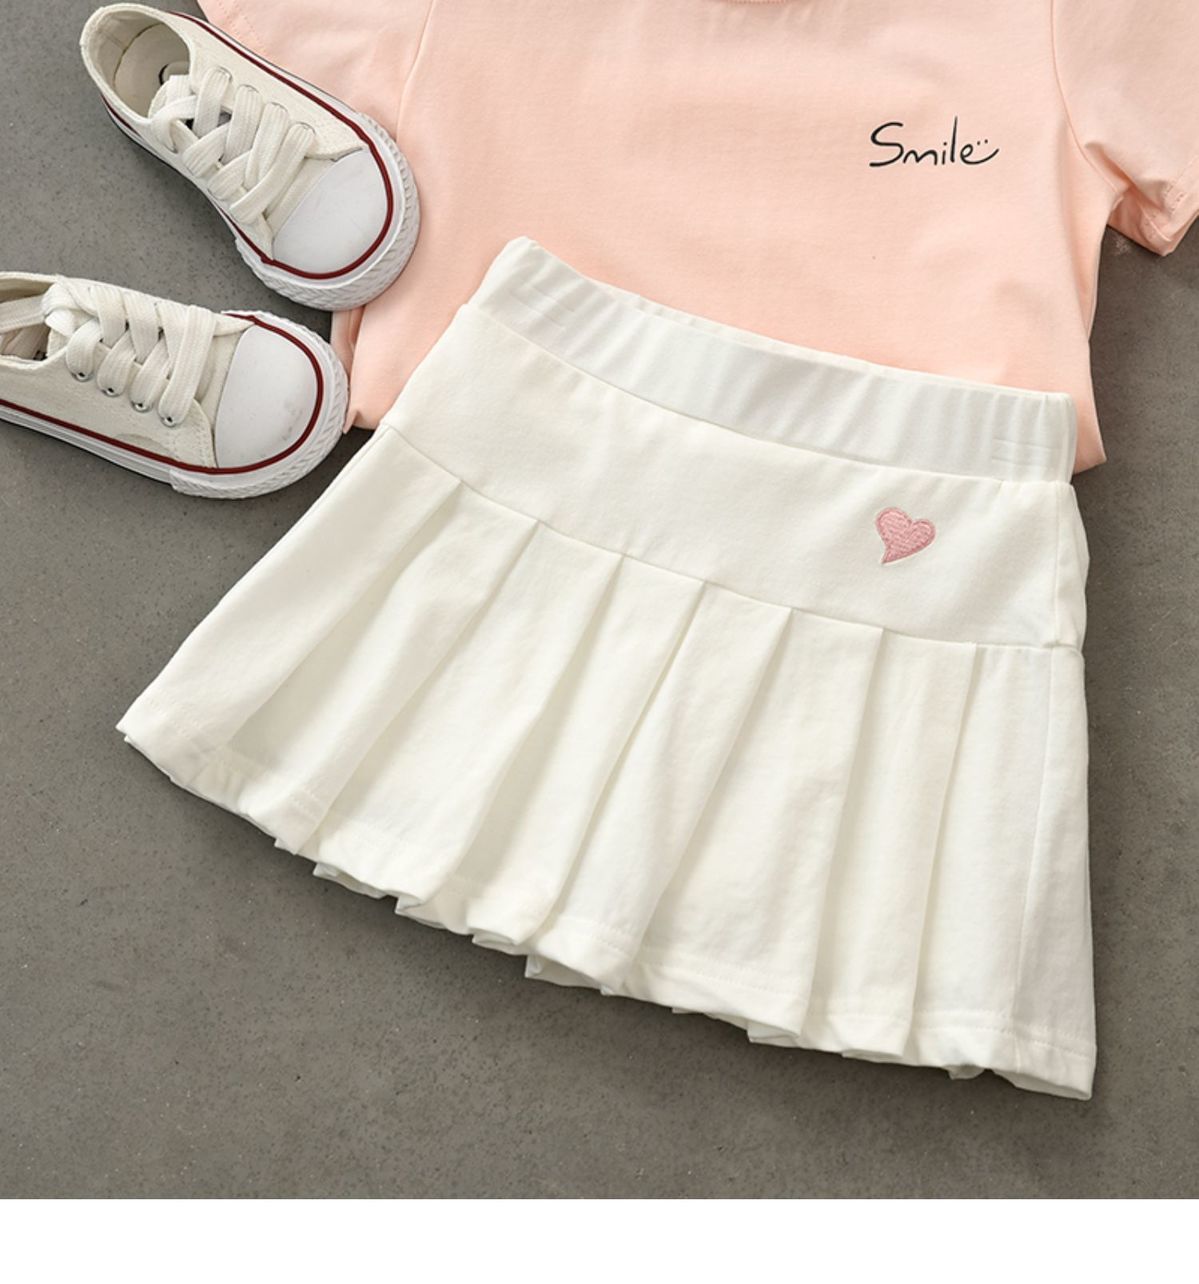 Chân váy xếp ly chất liệu Cotton dễ thương dành cho bé gái